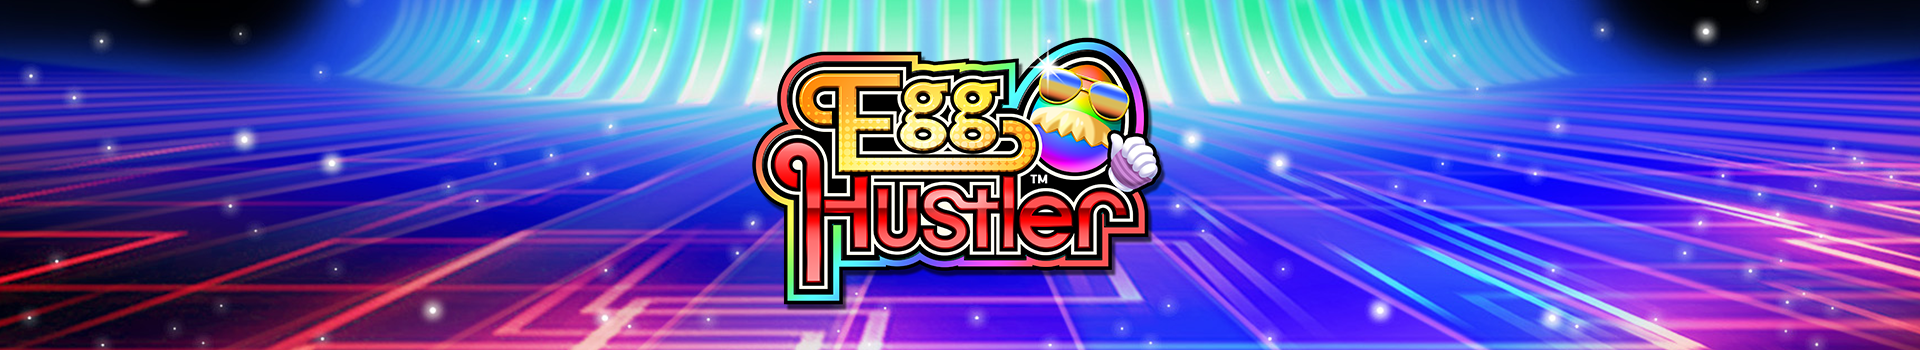 Egg-Hustler_Banner_02